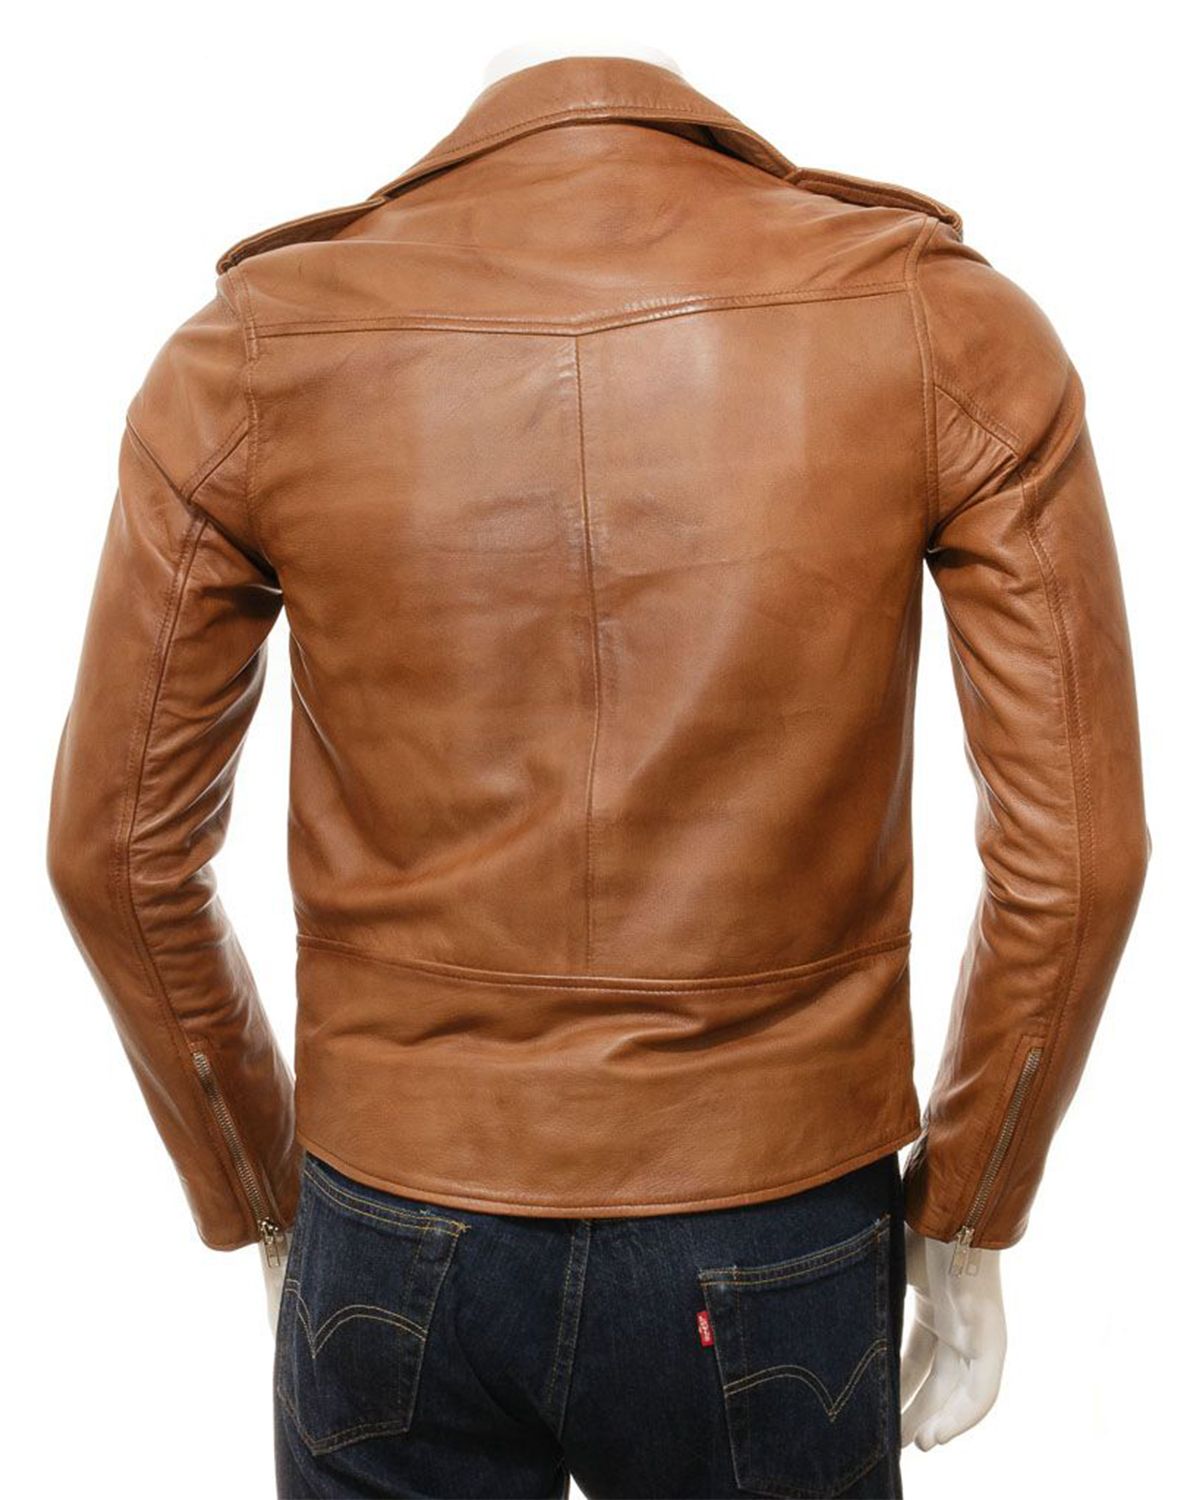 leather jacket men brown leather jacket men genuine leather jacket men git for men genuine leather jacket mens biker jacket motorcycle jacket men gift for him mens biker leather jacket